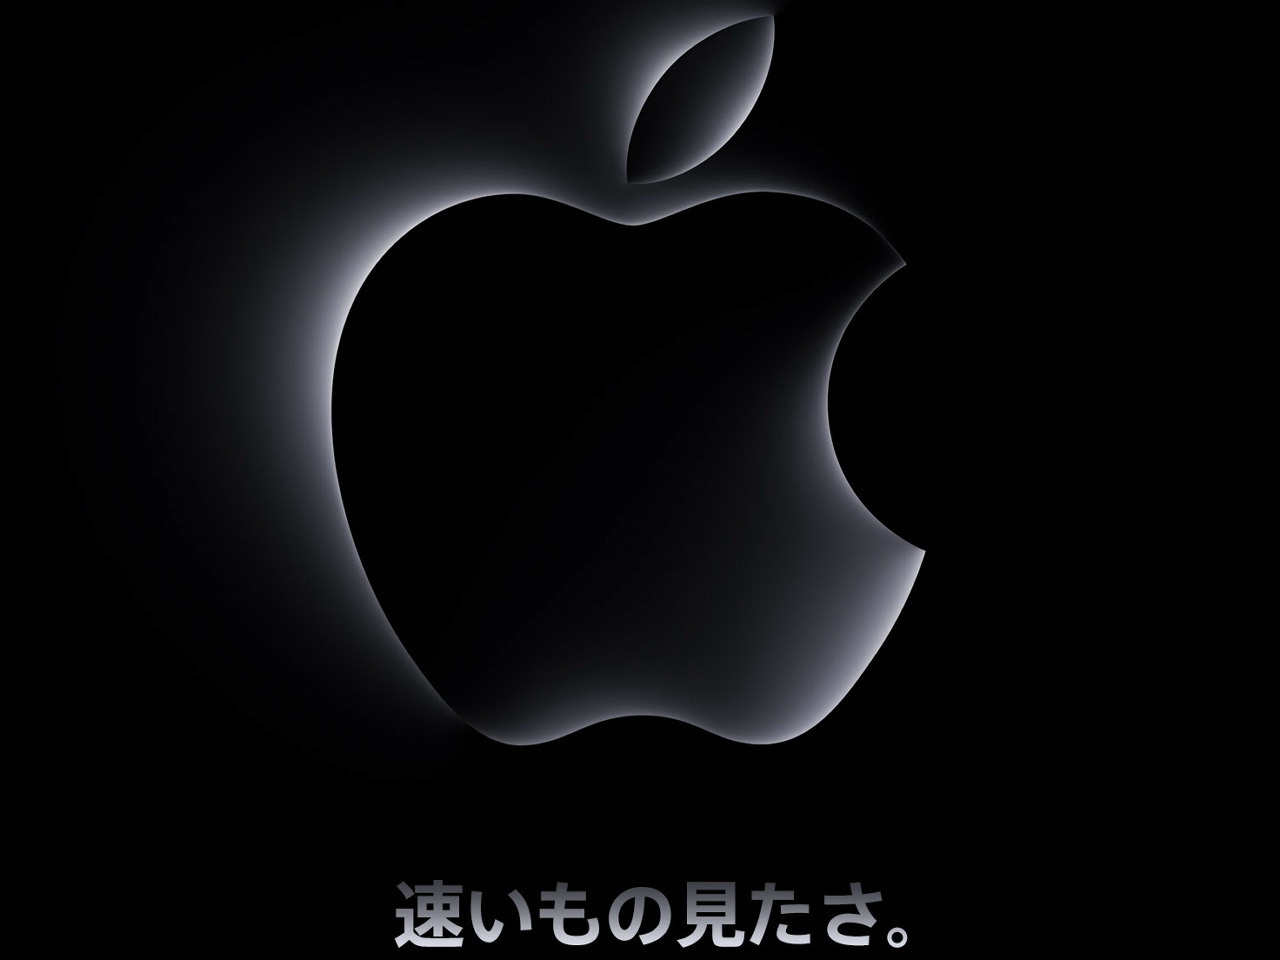 アップル、10月31日にイベント開催--新Macの発表か